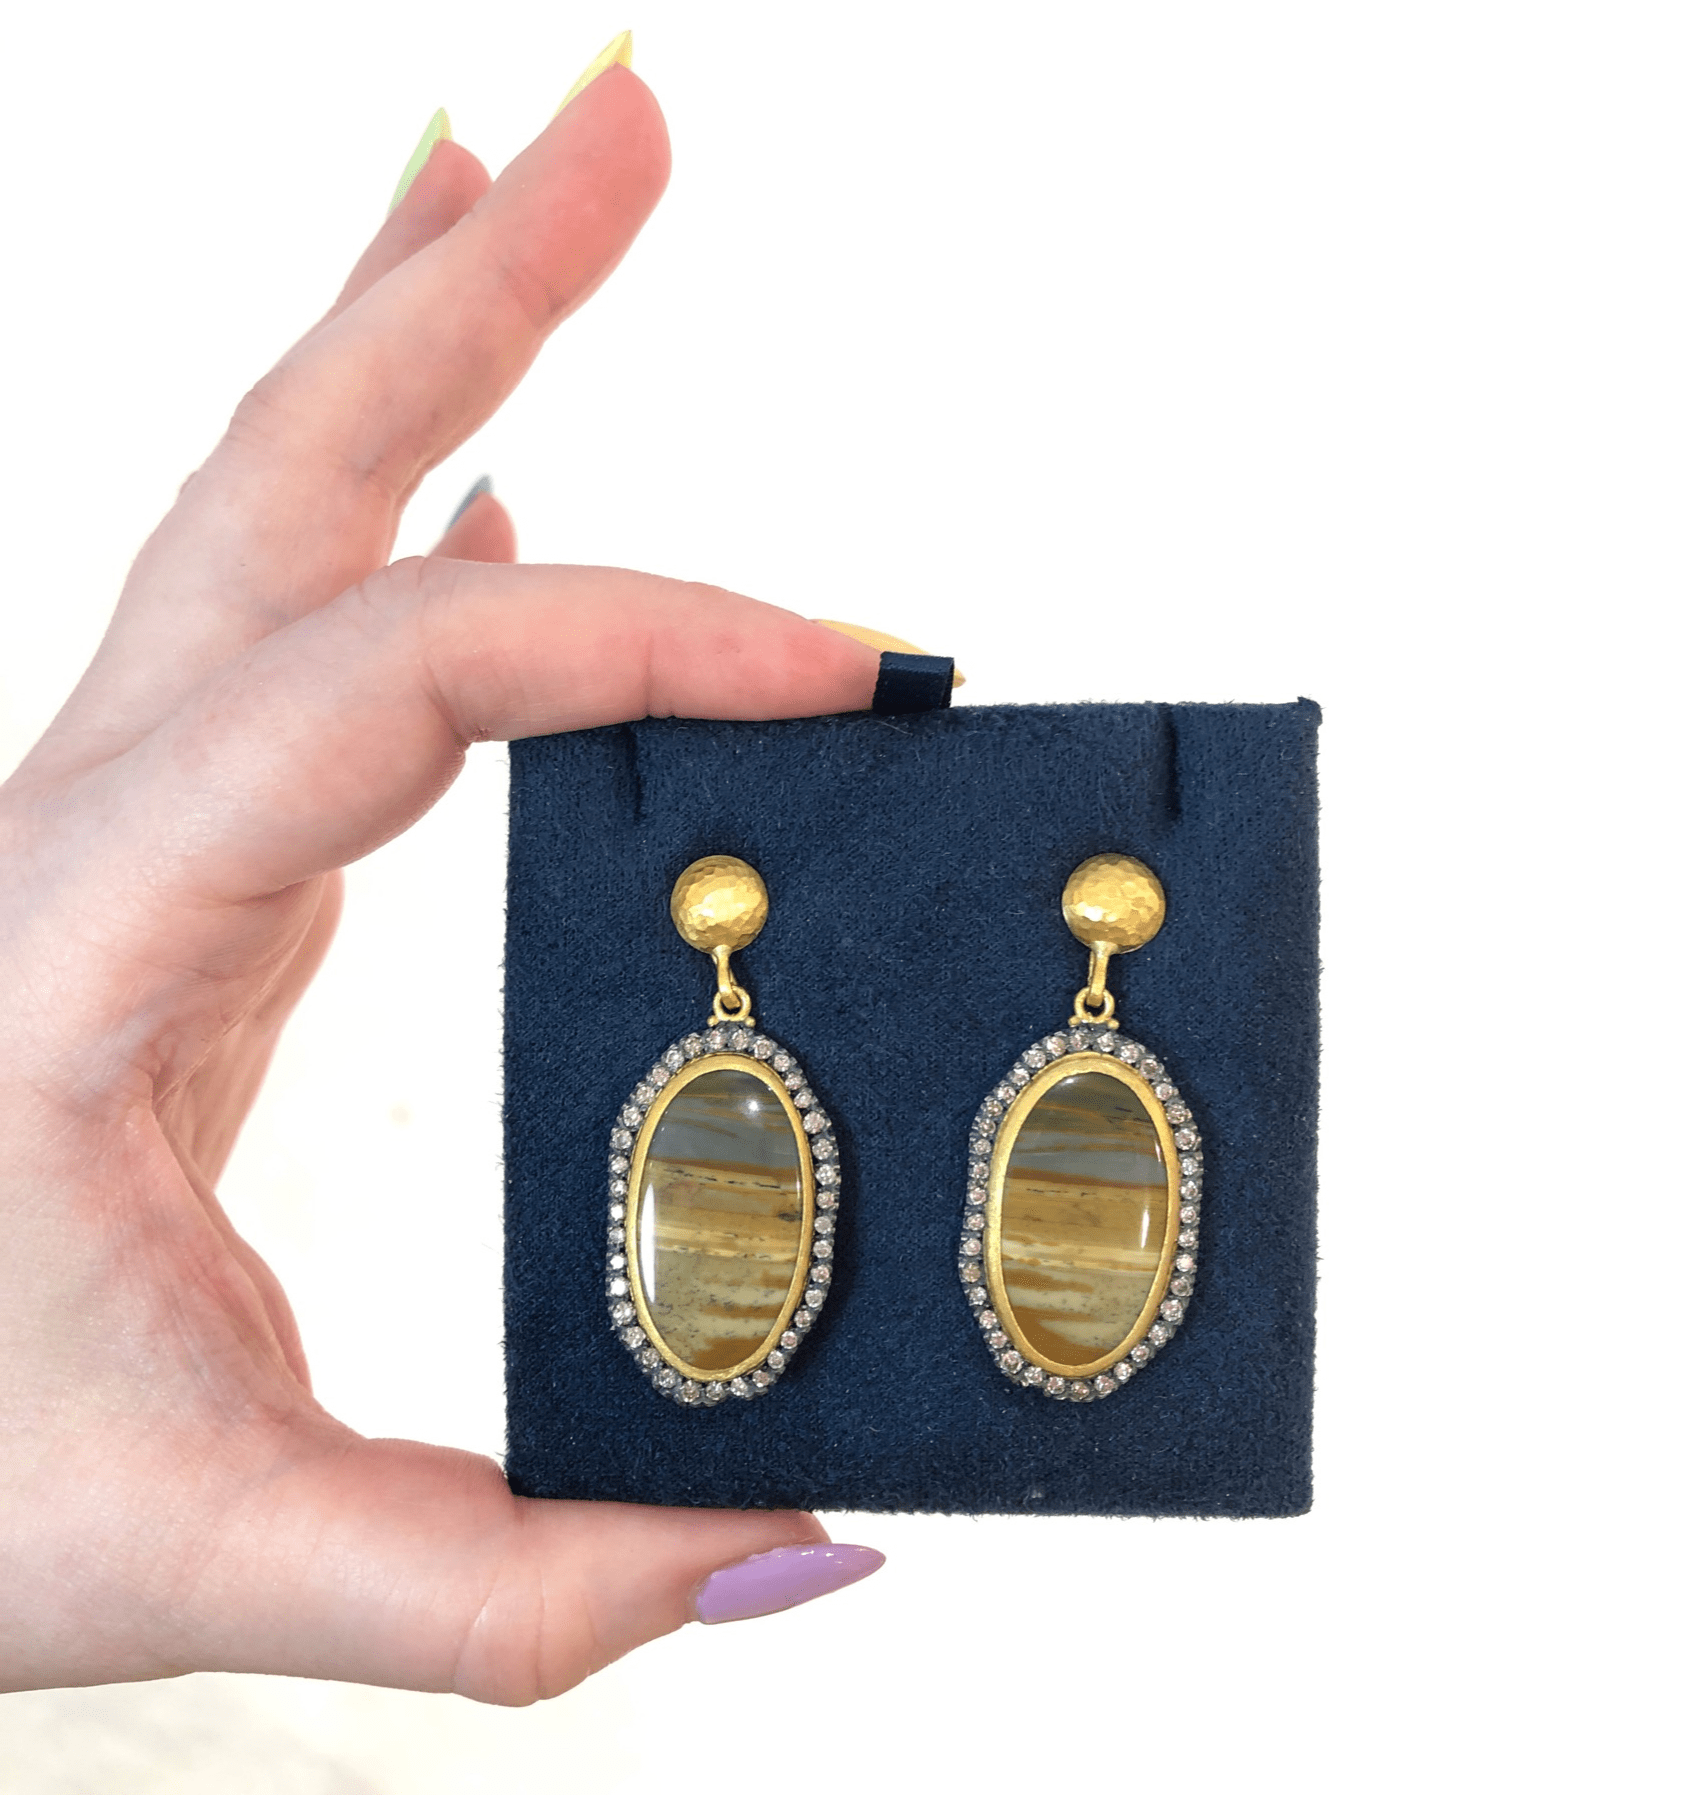 I love the jasper stones in these Lika Behar earrings.